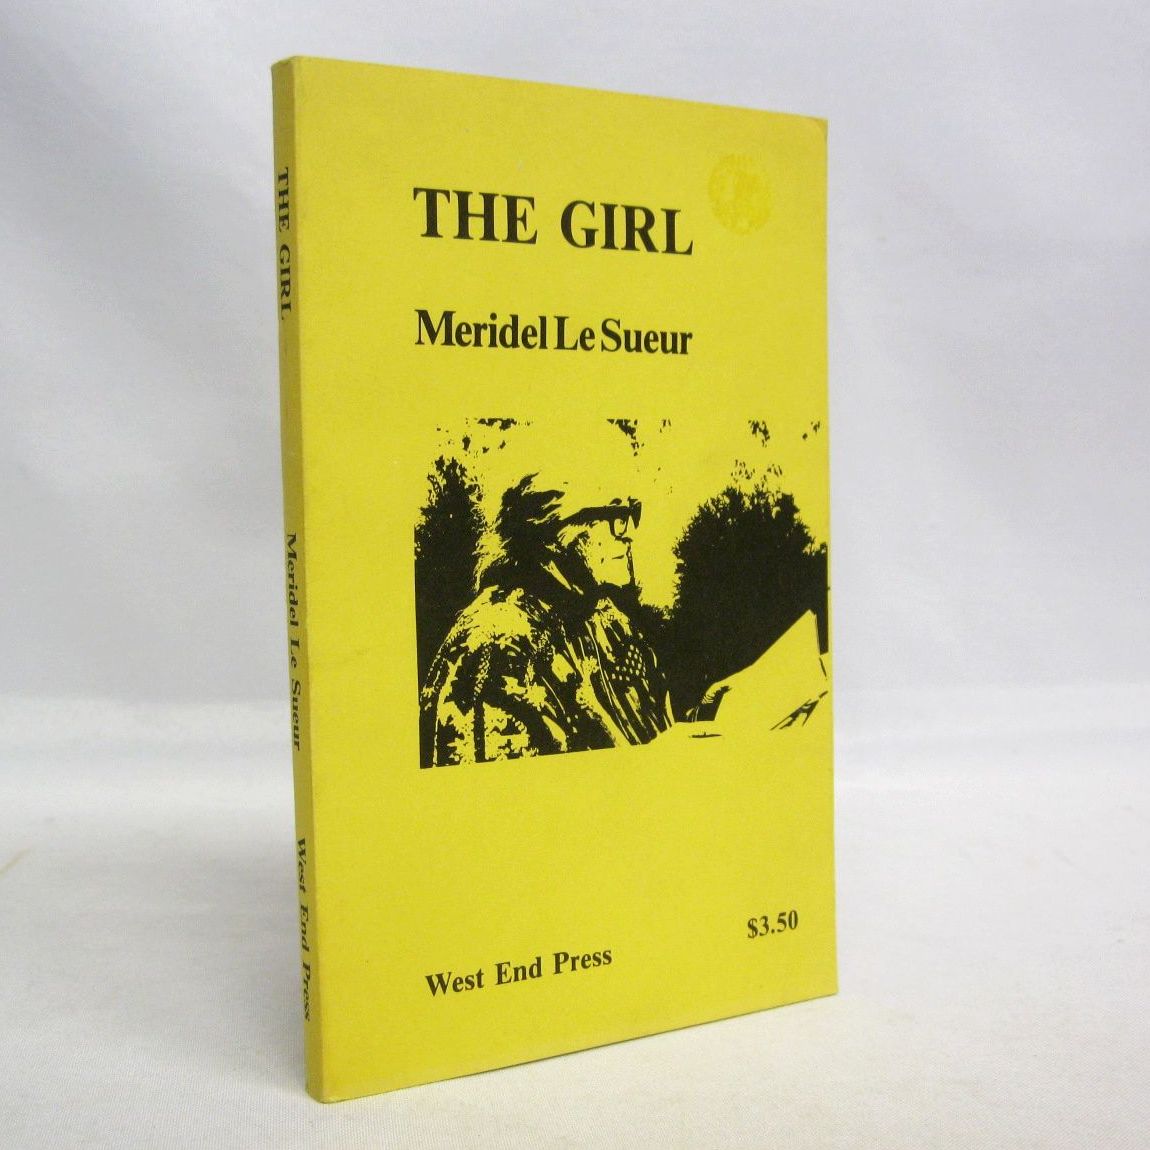 The Girl by Meridel Le Sueur